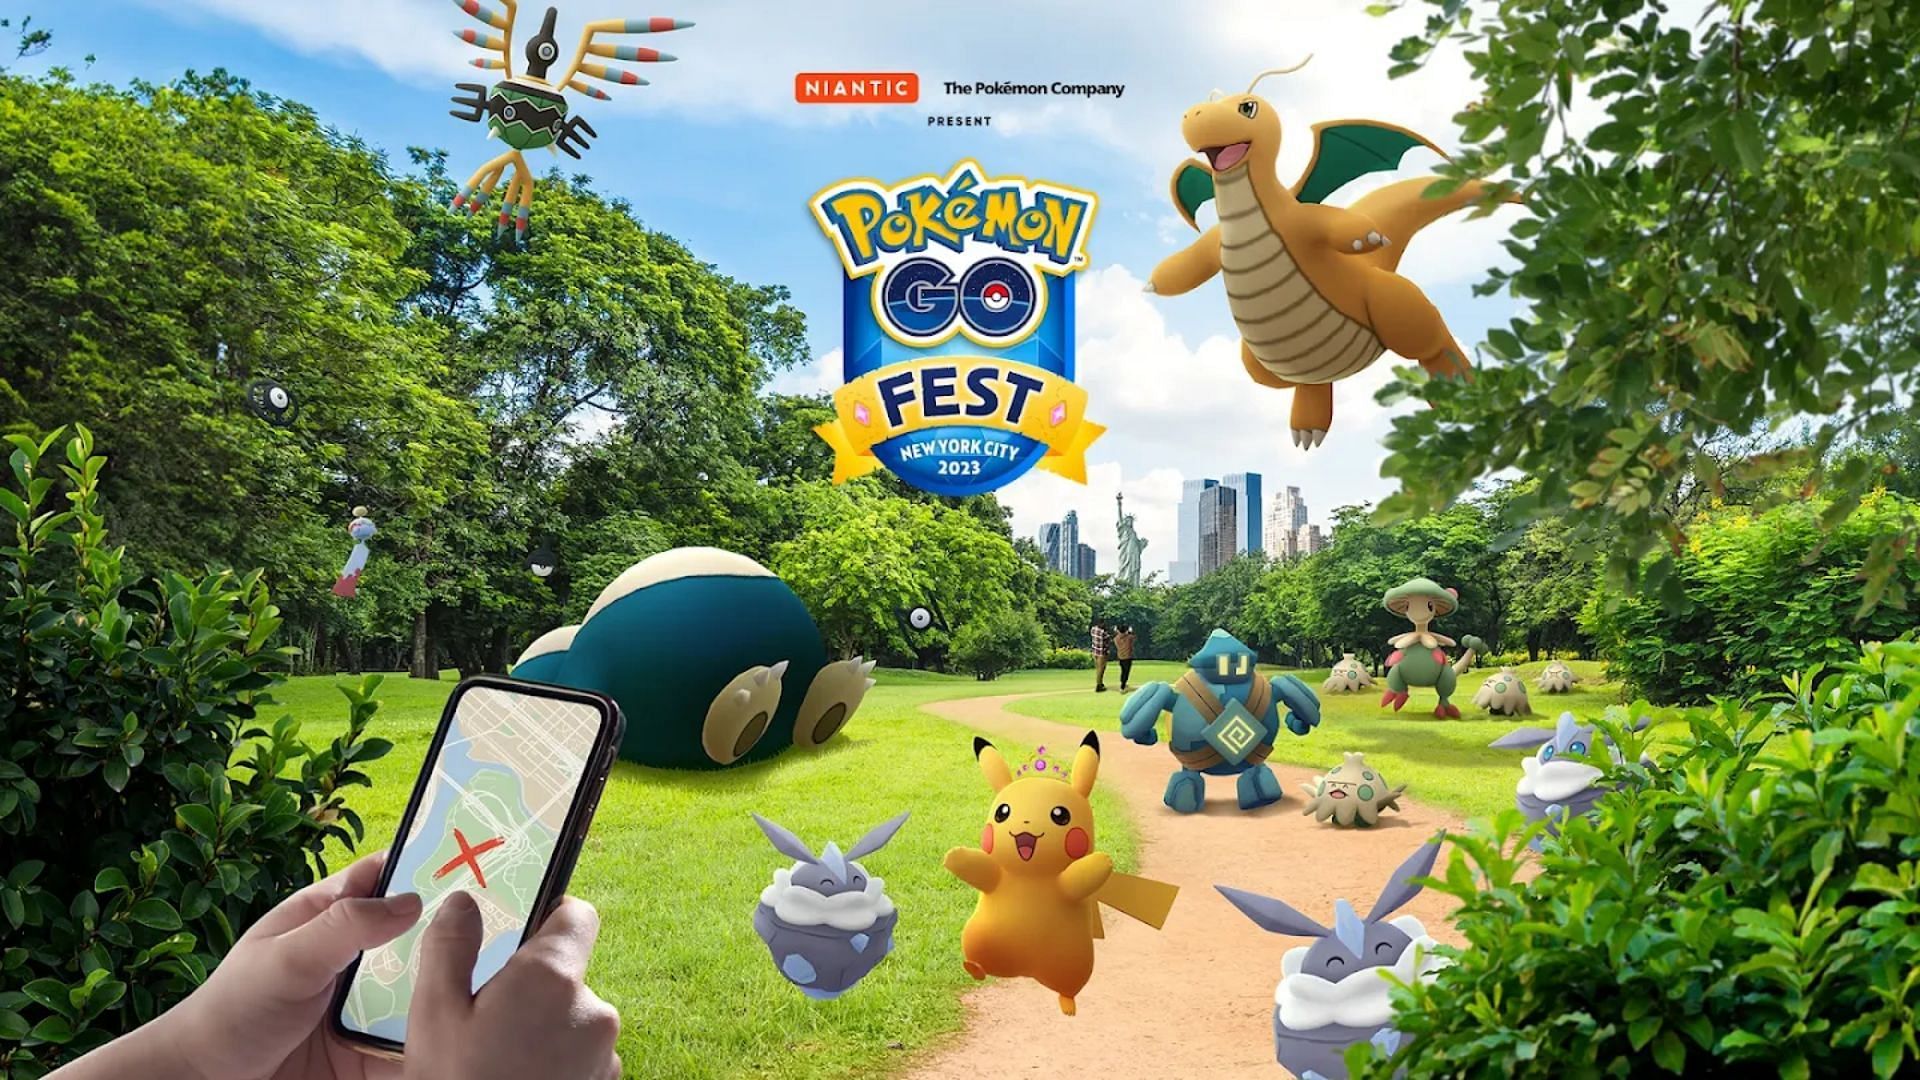 Pokemon GO Fest 20223 New York City poster (Image via Niantic)